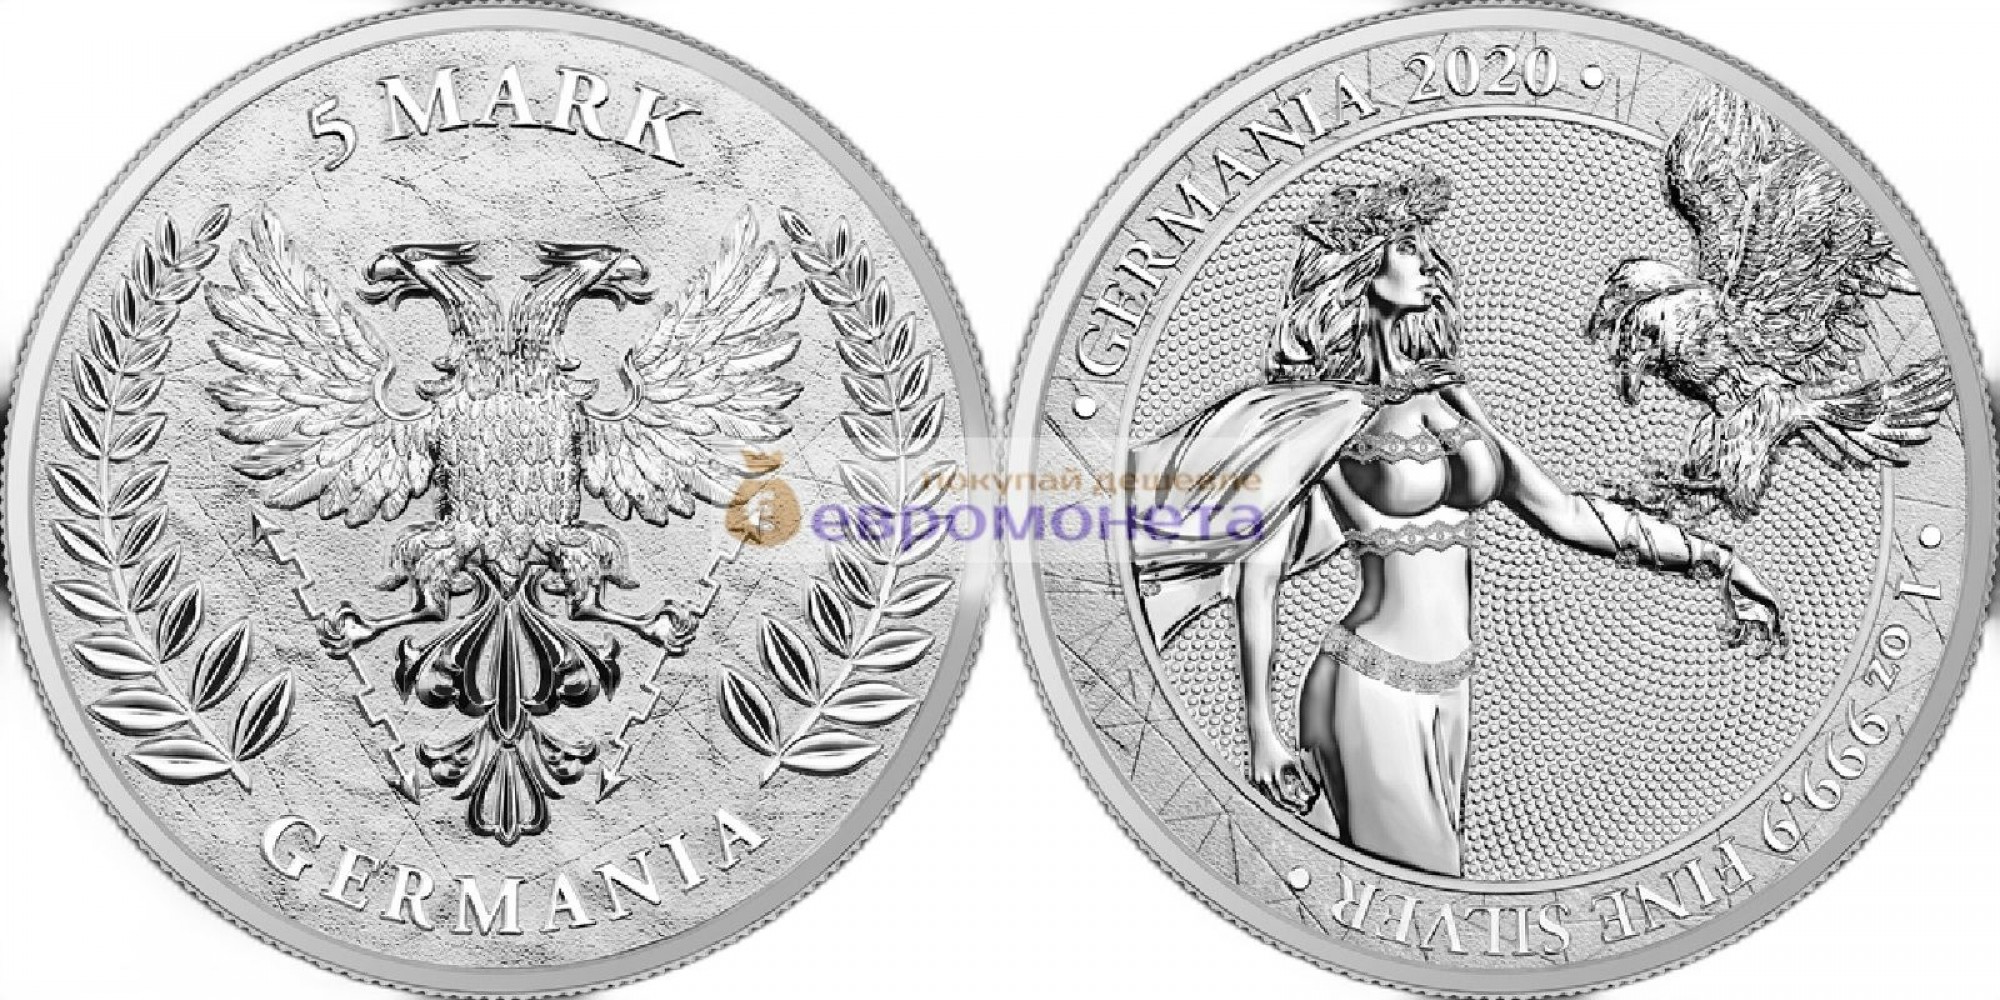 Аллегории: Германия 5 марок 2020 год 1 унция серебра 9999 пробы. Germania Mint тираж 25 000 шт.